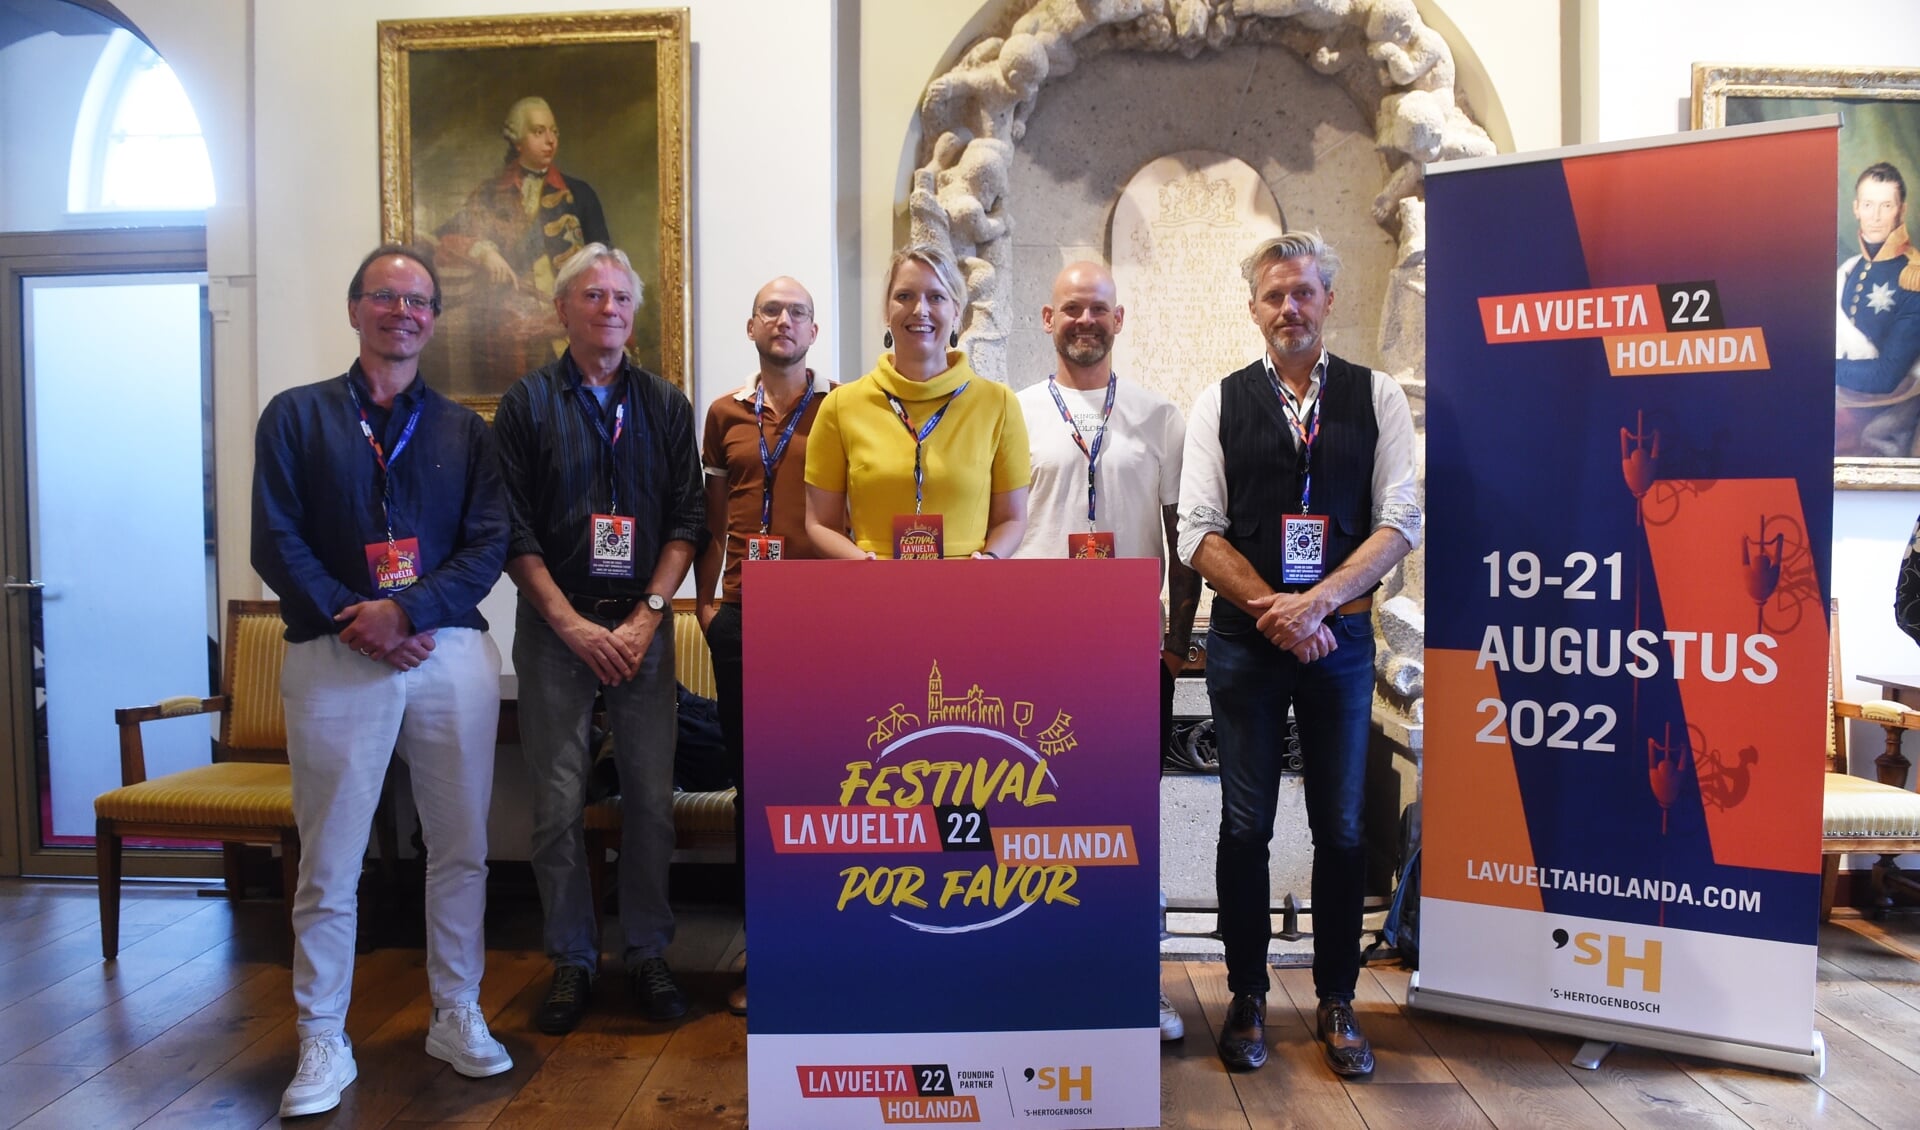 De presentatie van het La Vuelta-programma en festivallogo met v.l.n.r. Paul van Puijenbroek, Maarten Sterneberg, Noël Josemans, Marianne van der Sloot, Jan-Henk van Ieperen en Stephan Grilis.